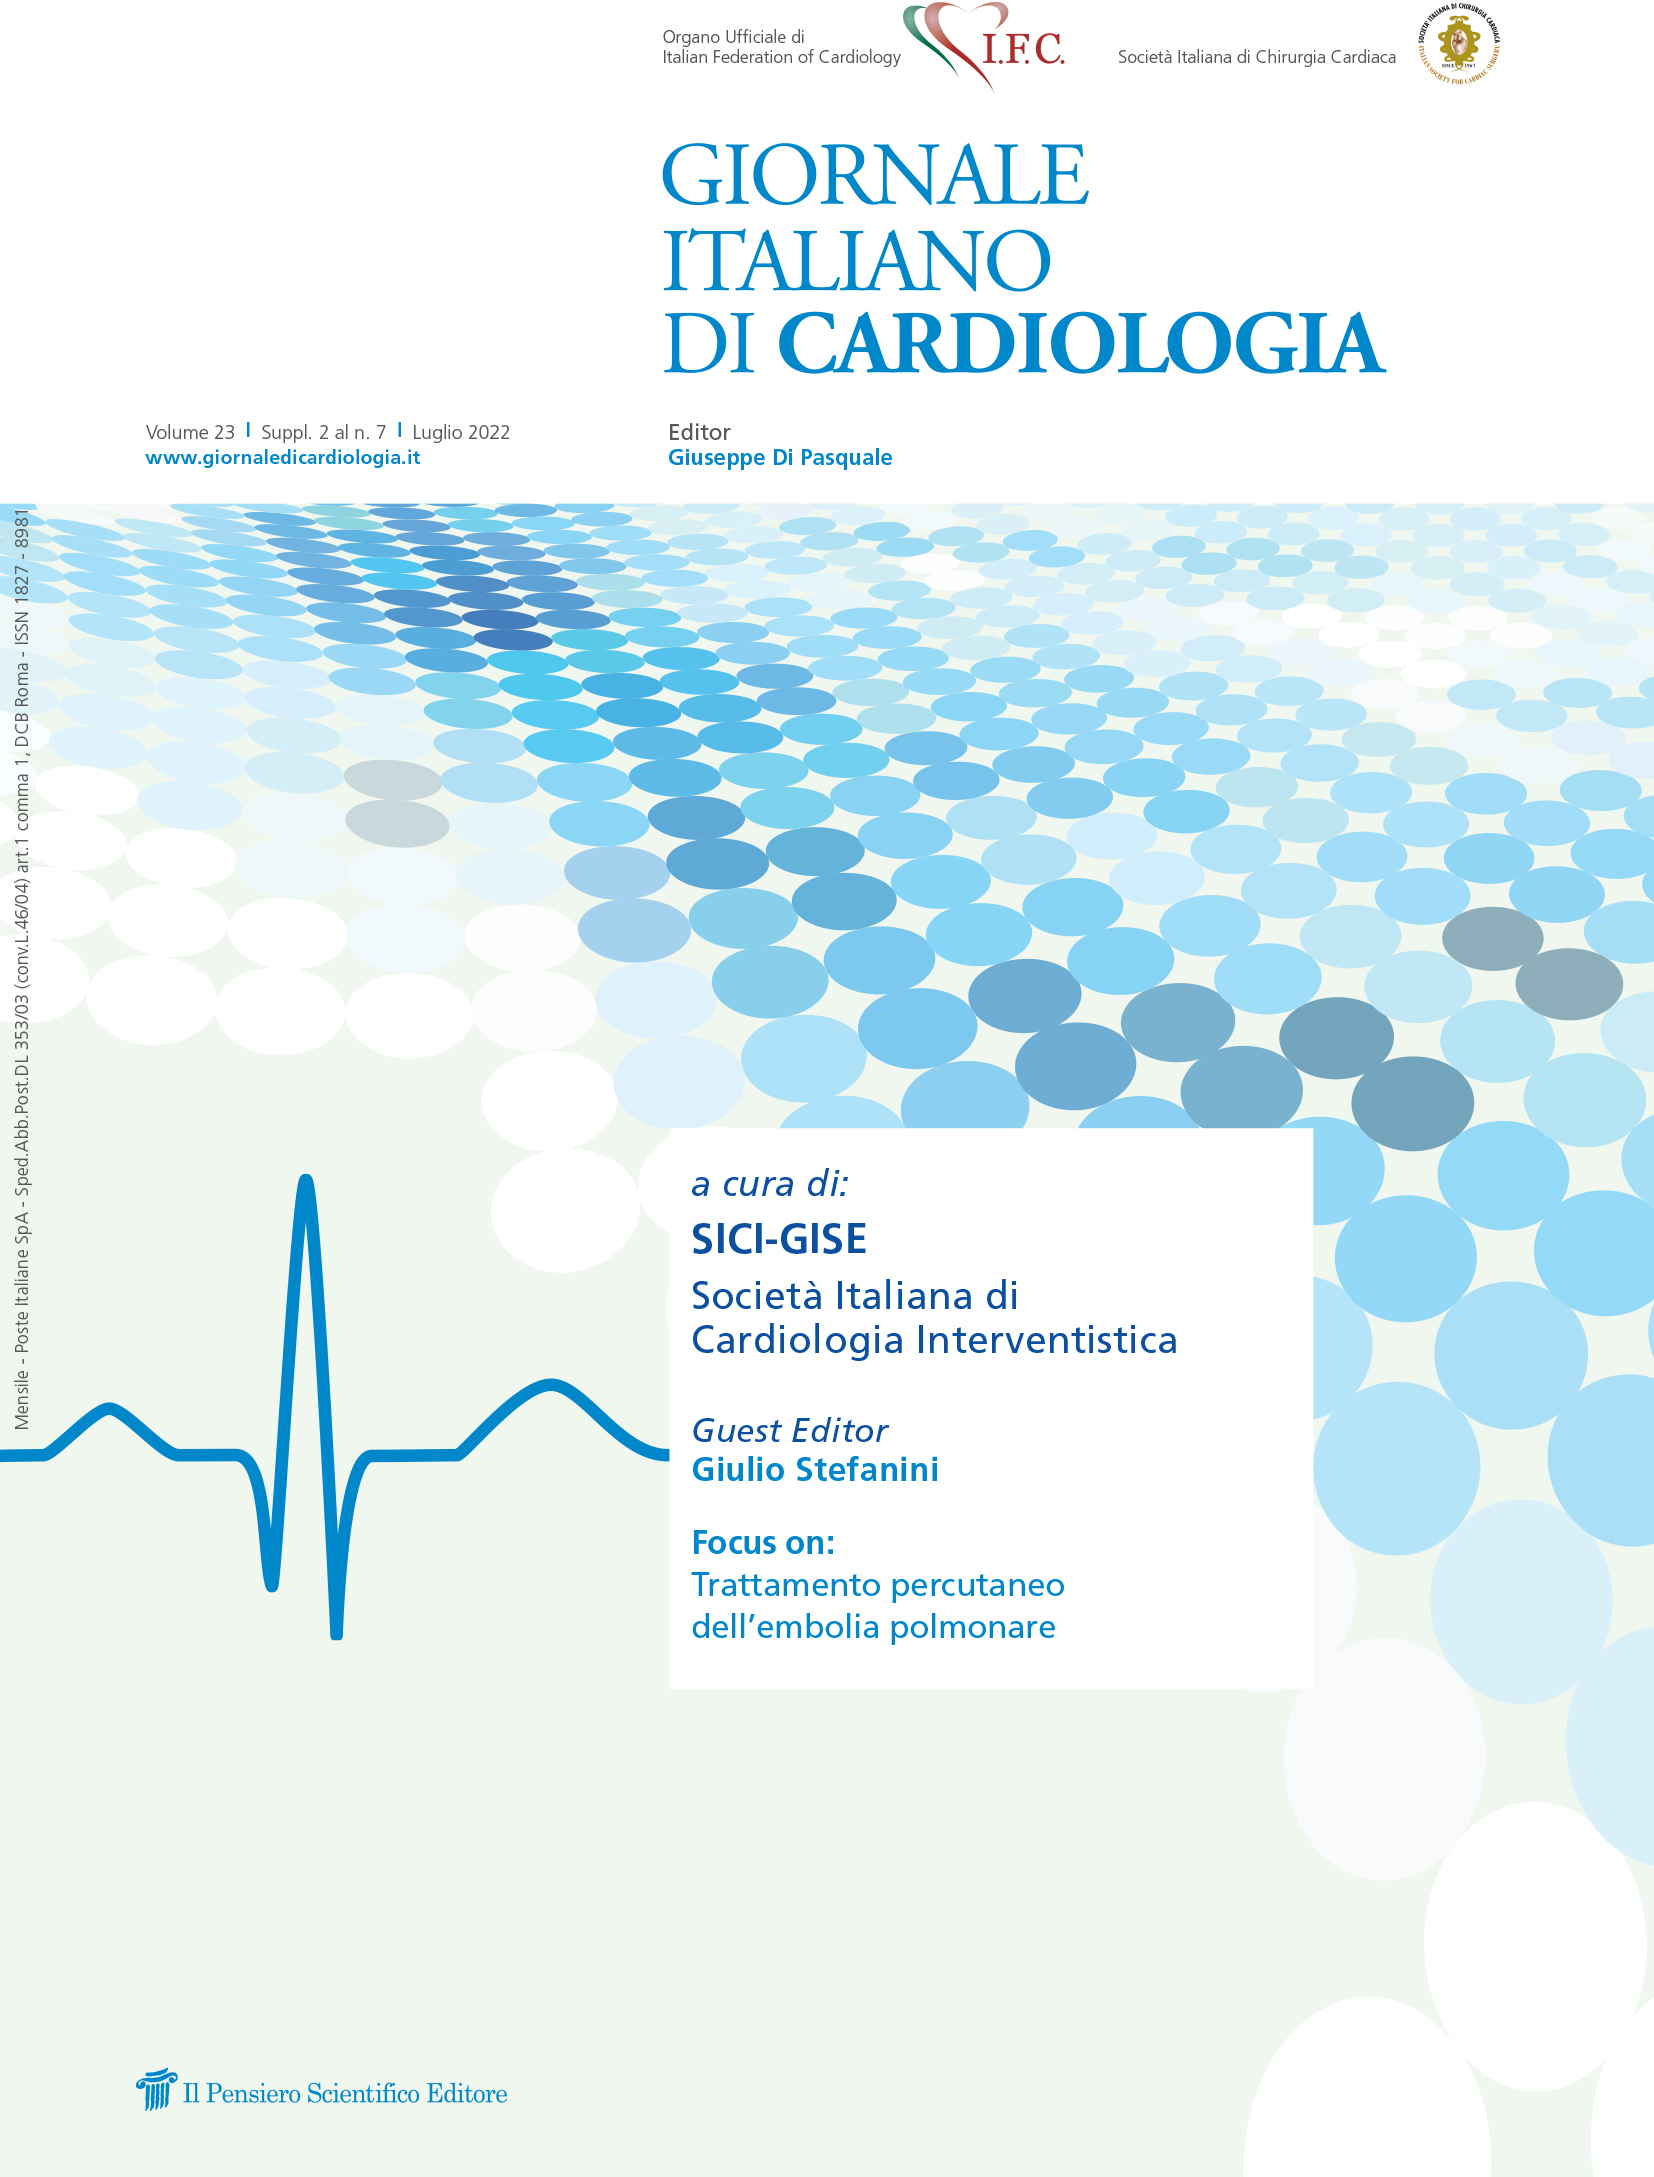 2022 Vol. 23 Suppl. 2 al N. 7 Luglioa cura di:
SICI-GISE
Società Italiana di
Cardiologia Interventistica